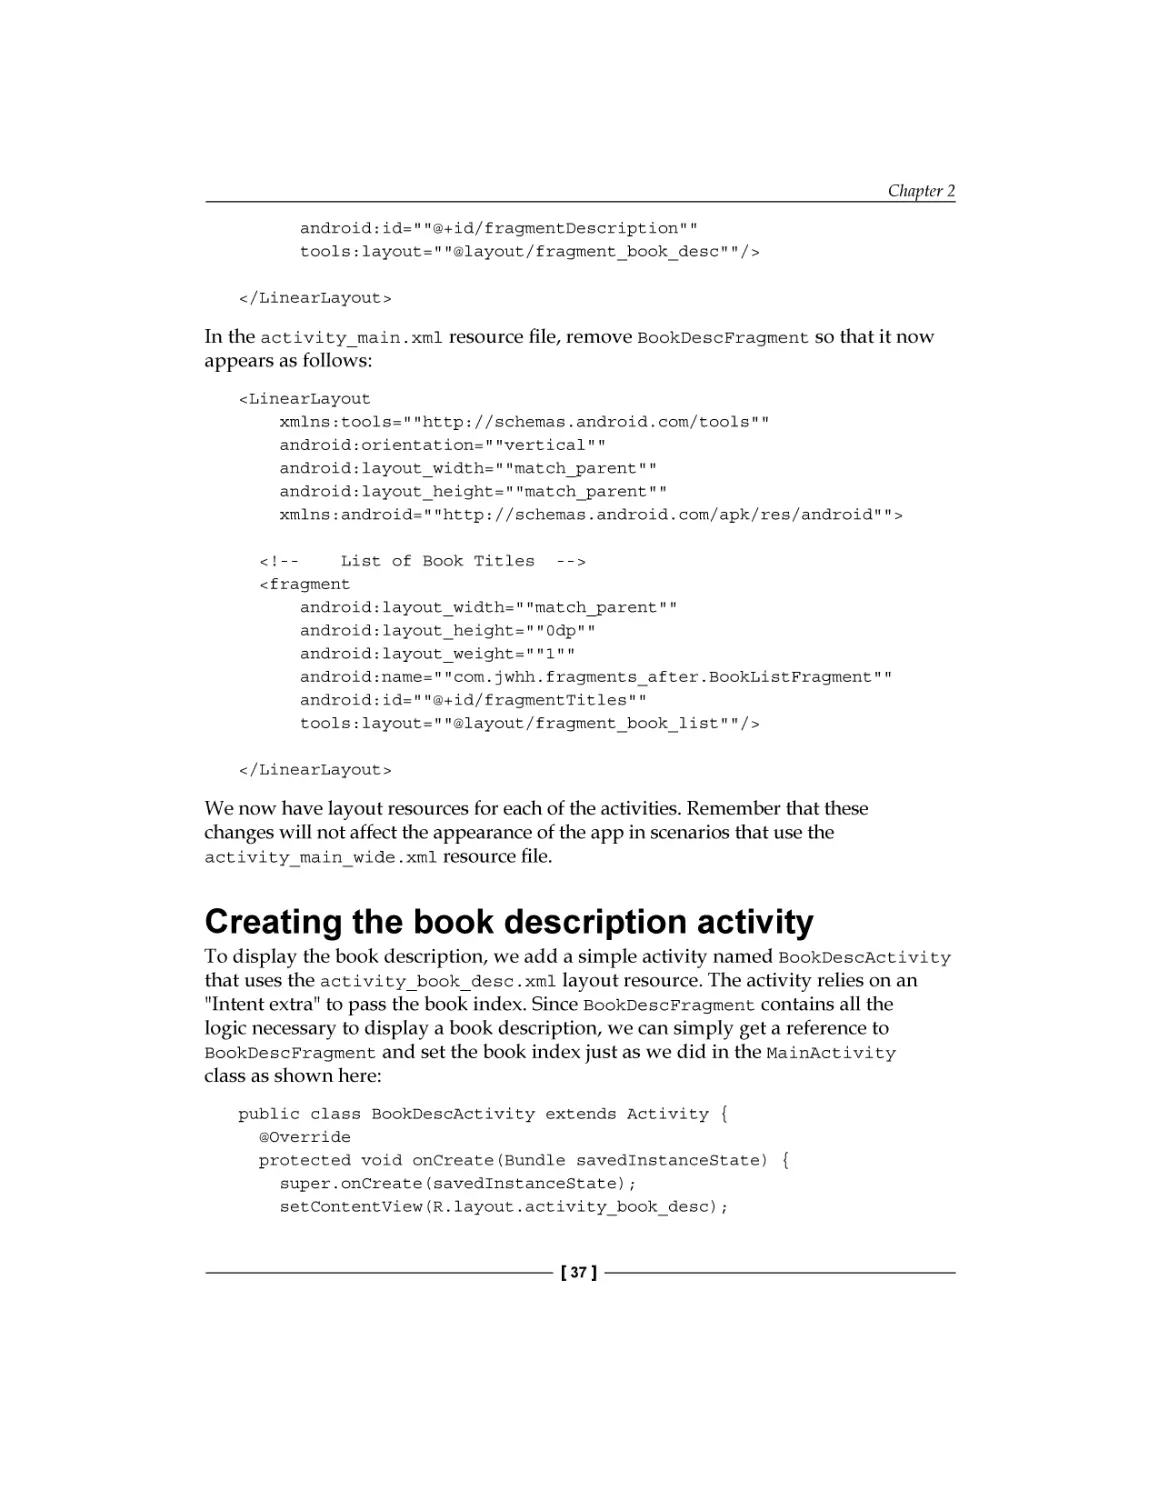 Creating the book description activity